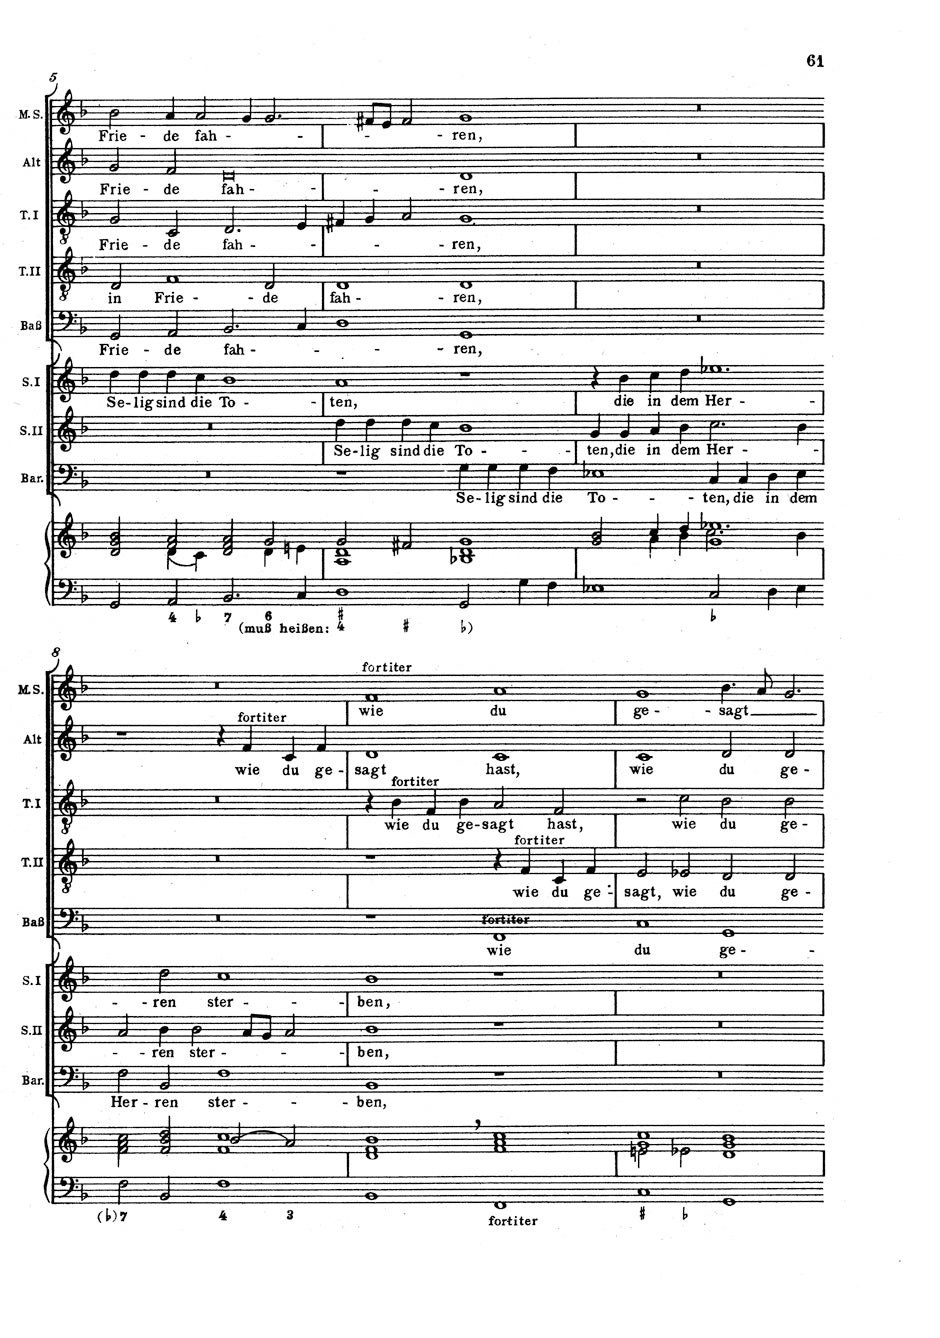 Schütz: Musikalische Exequien, SWV 279–281, Op. 7